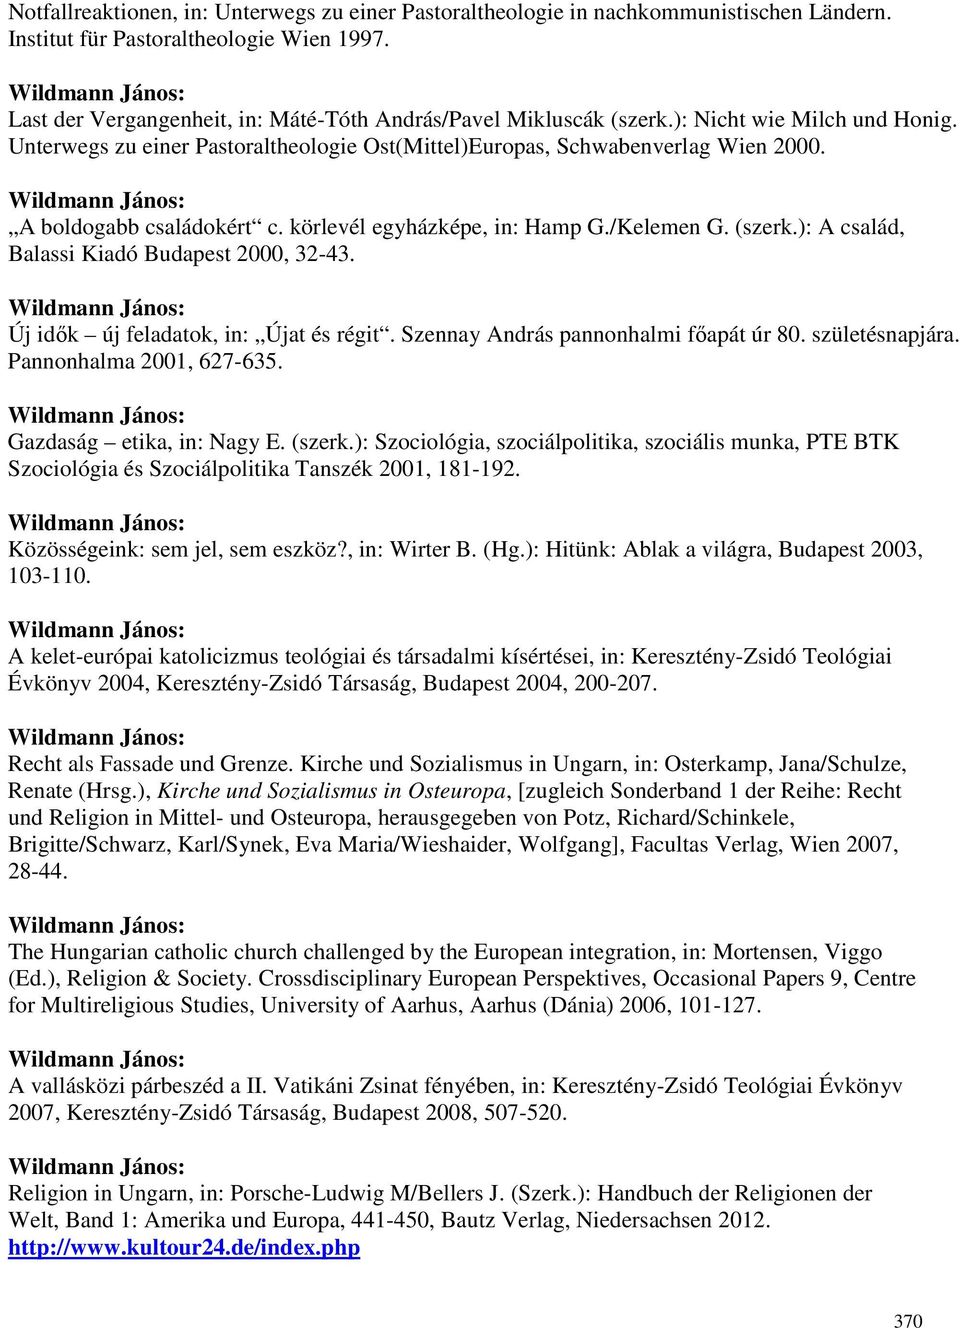 A boldogabb családokért c. körlevél egyházképe, in: Hamp G./Kelemen G. (szerk.): A család, Balassi Kiadó Budapest 2000, 32-43. Új idık új feladatok, in: Újat és régit.